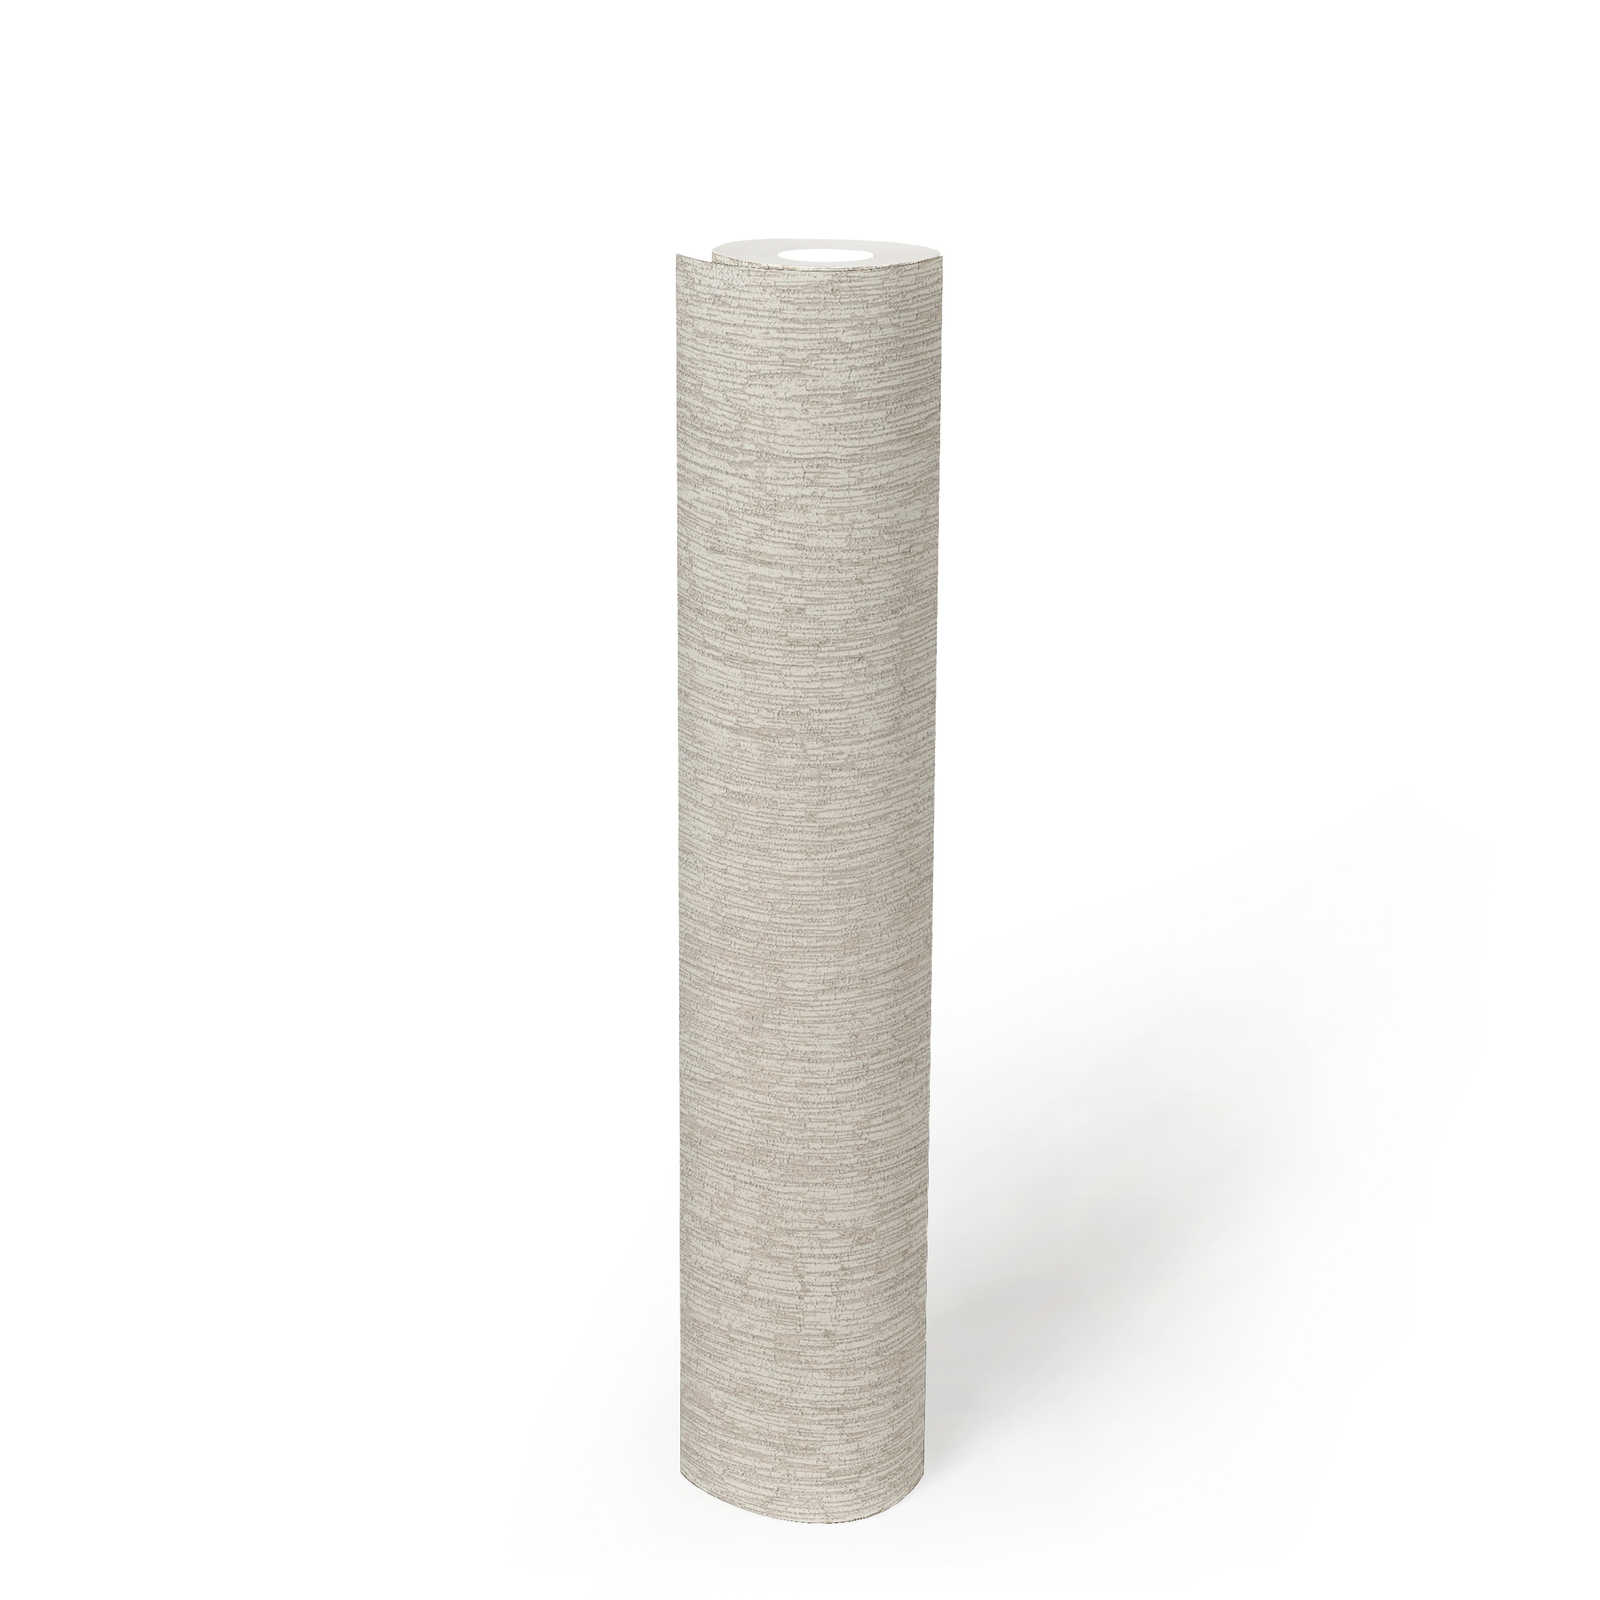             Vliestapete in Textiloptik leicht glänzend – Weiß, Grau, Silber
        